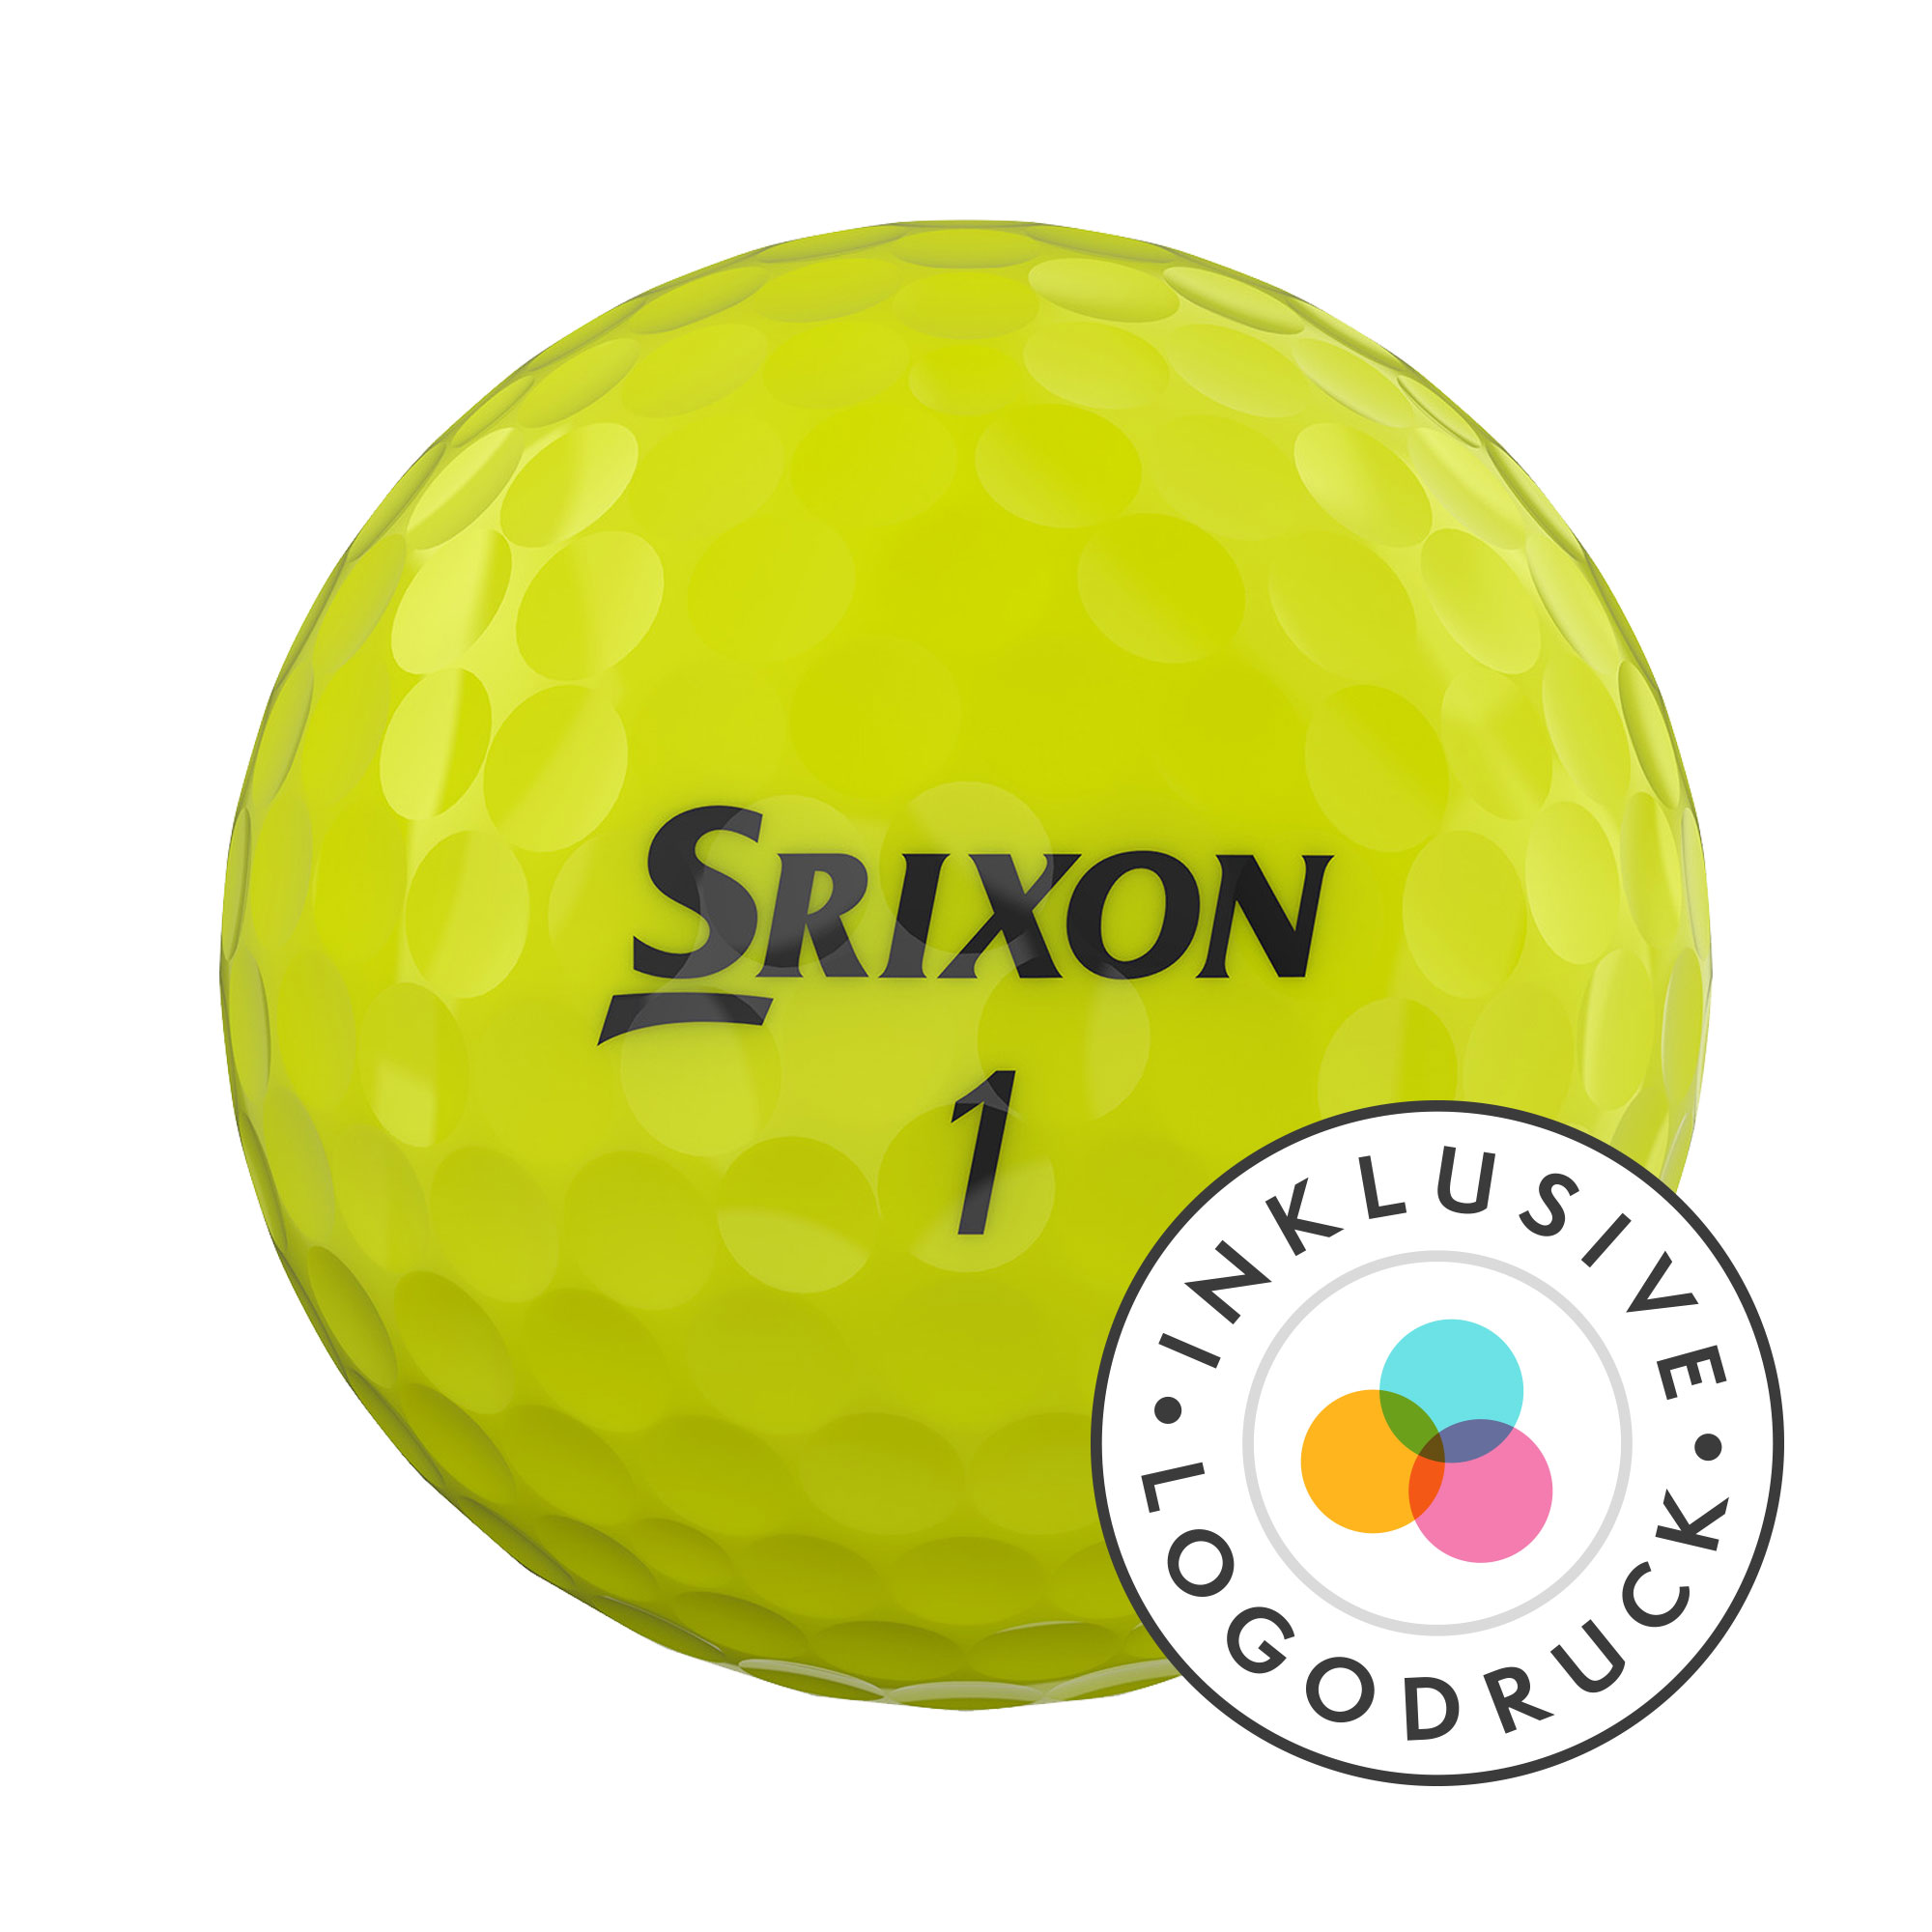 Srixon AD333 Golfbälle bedruckt, gelb (VPE à 12 Bälle)